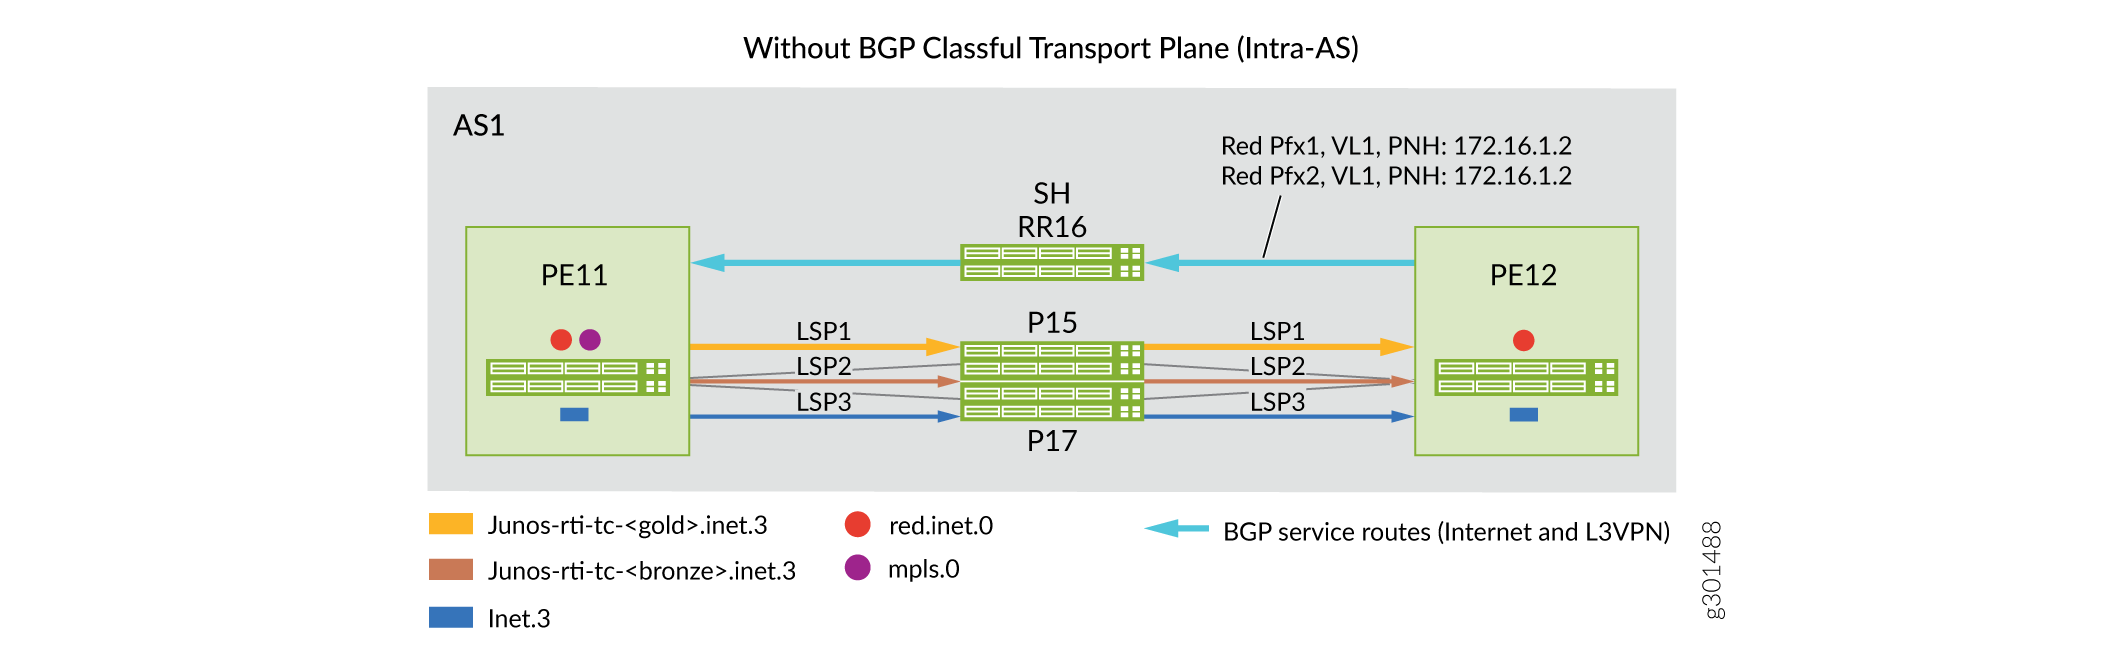 Внутри as Domain: Сценарии до и после внедрения классовой BGP транспортных плоскостей